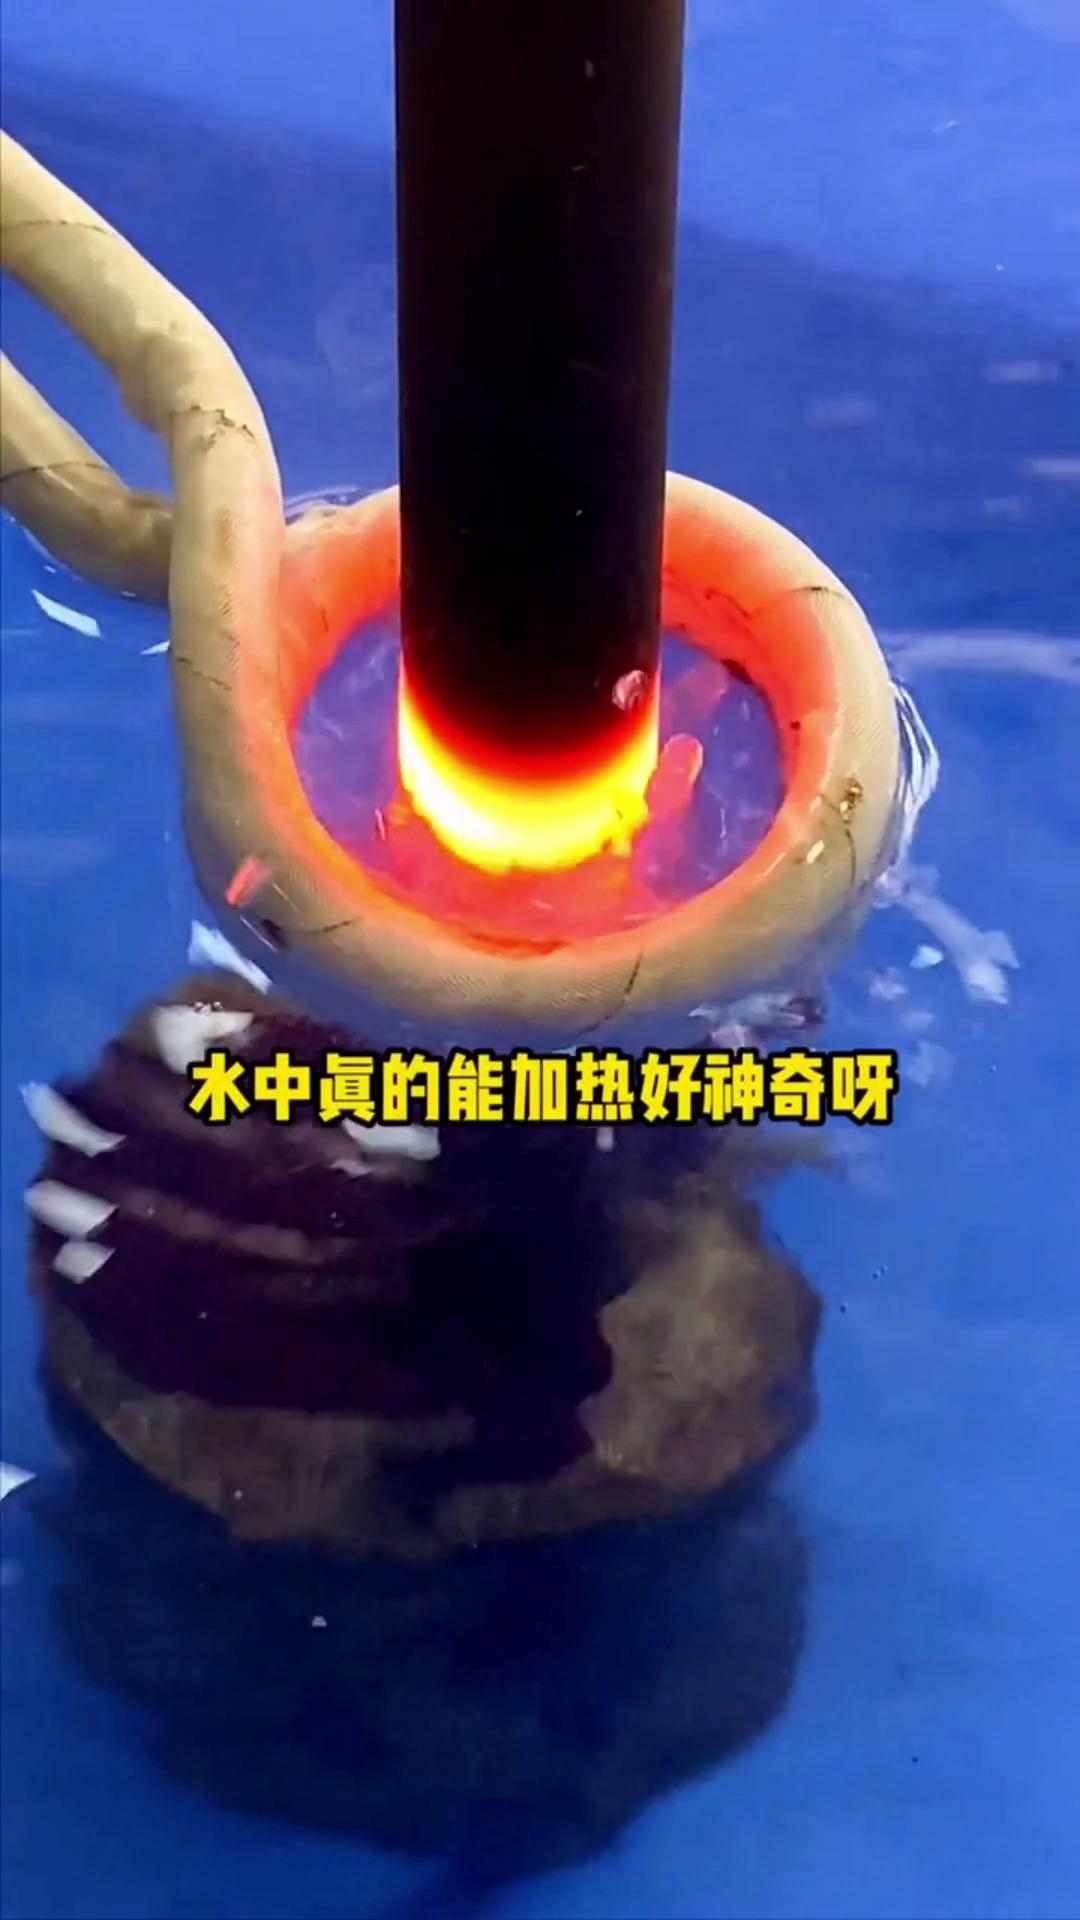 看，这个高频加热机竟然可以在水里加热金属，真的好神奇啊